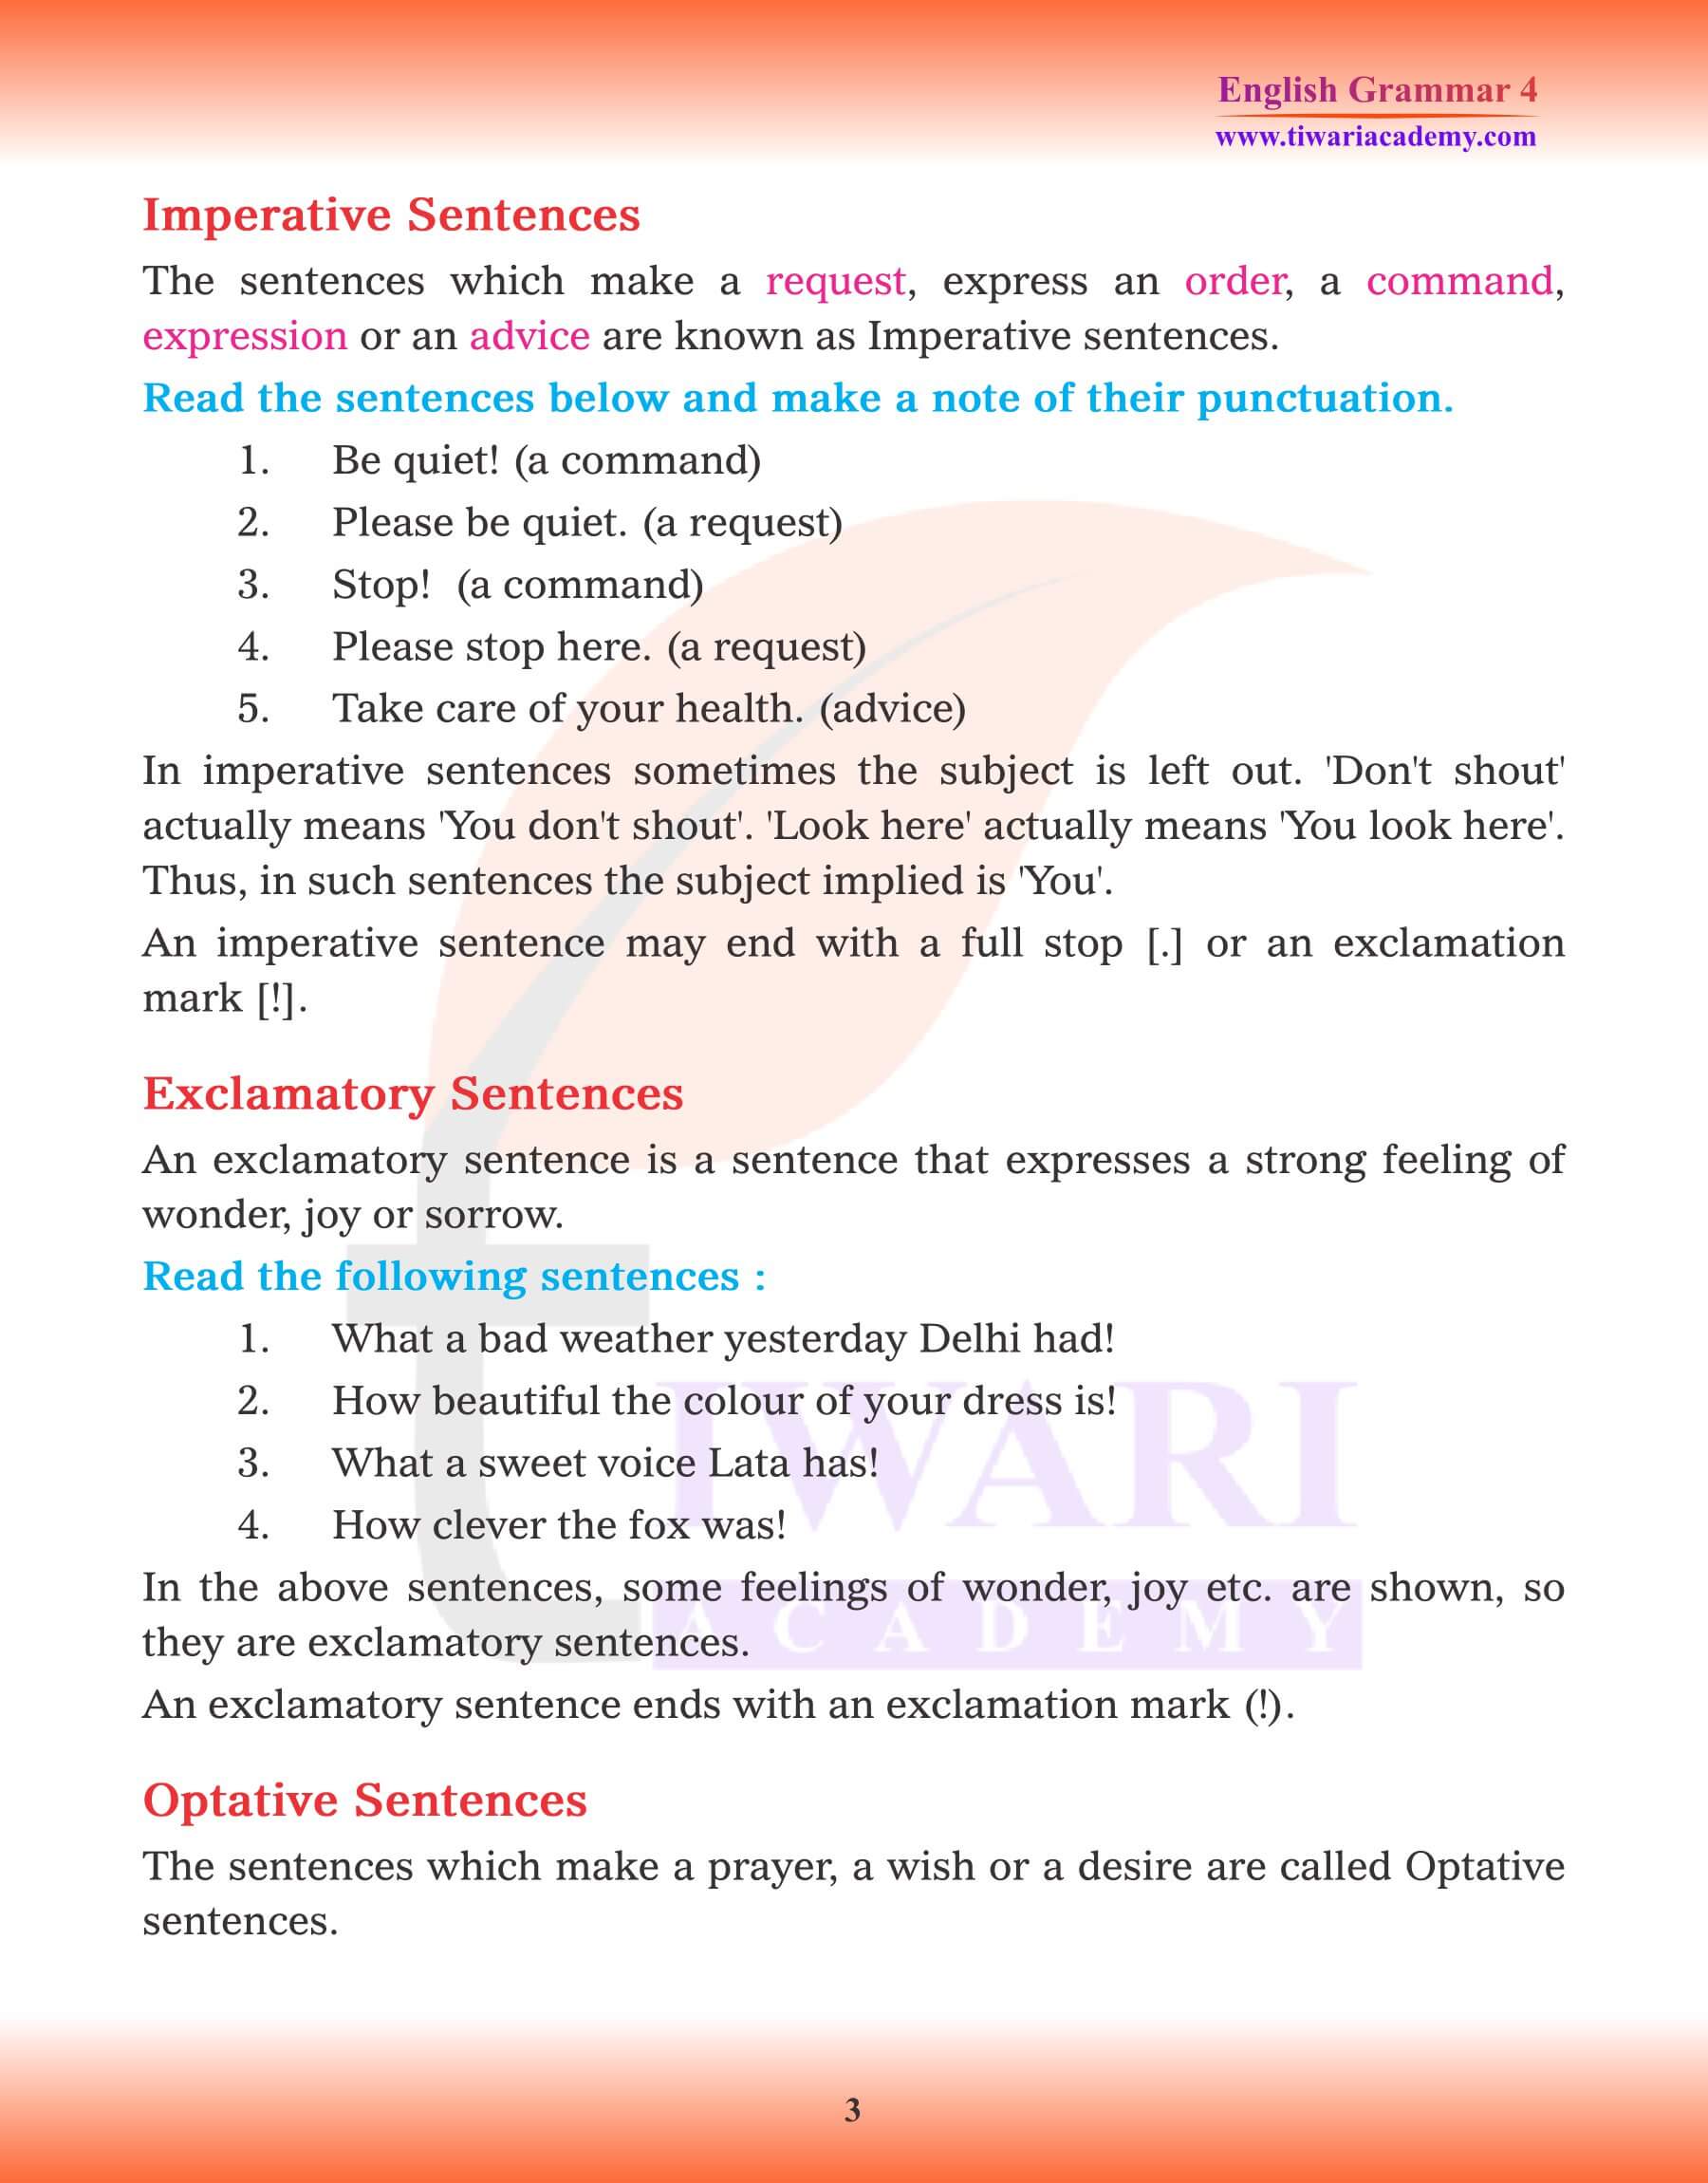 Class 4 Grammar Kinds of Sentence